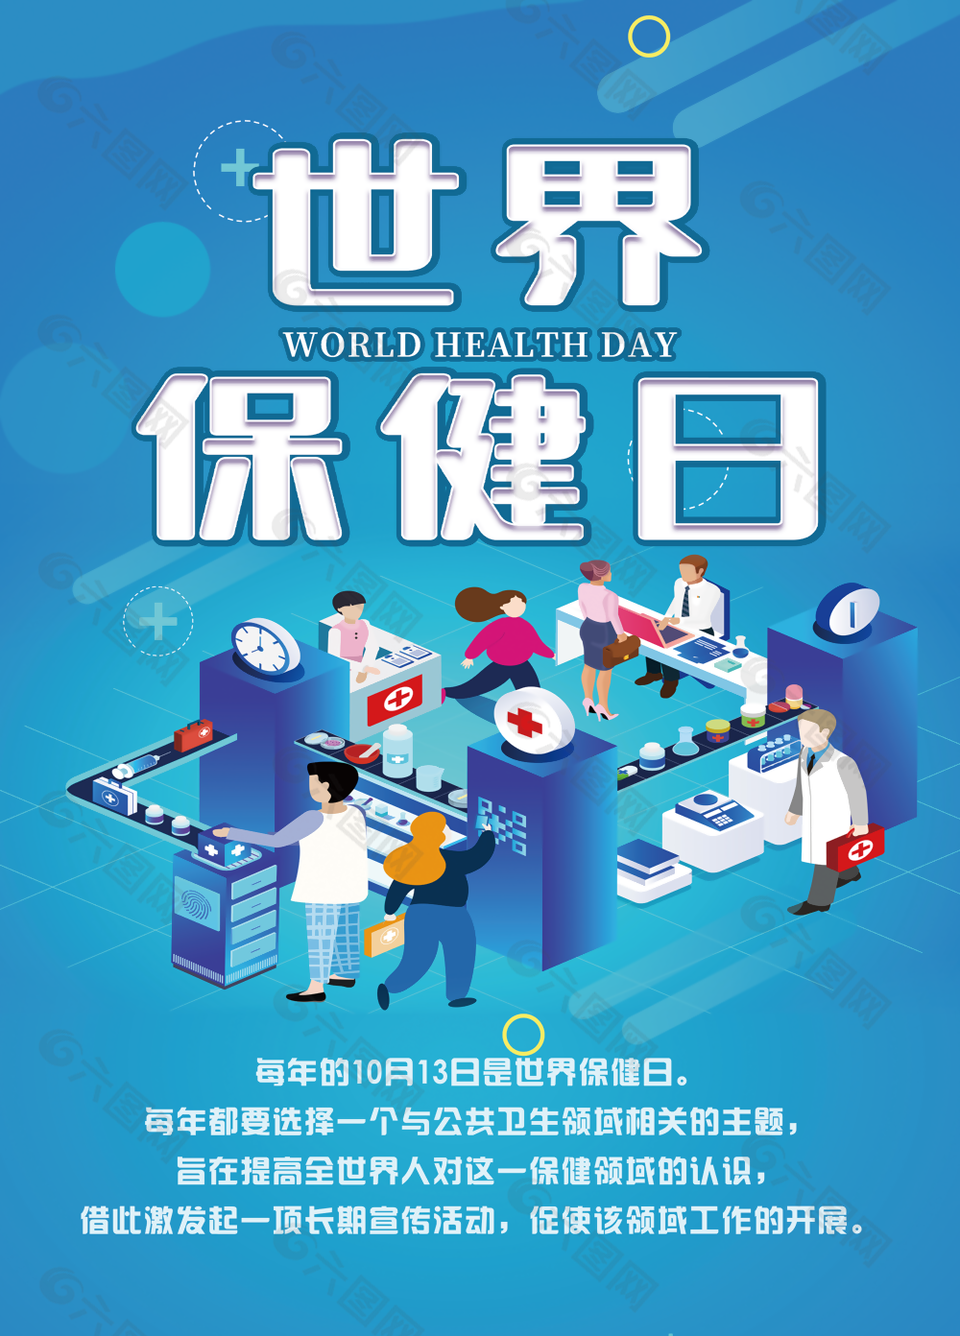 蓝色个性卡通扁平化世界保健日海报图设计